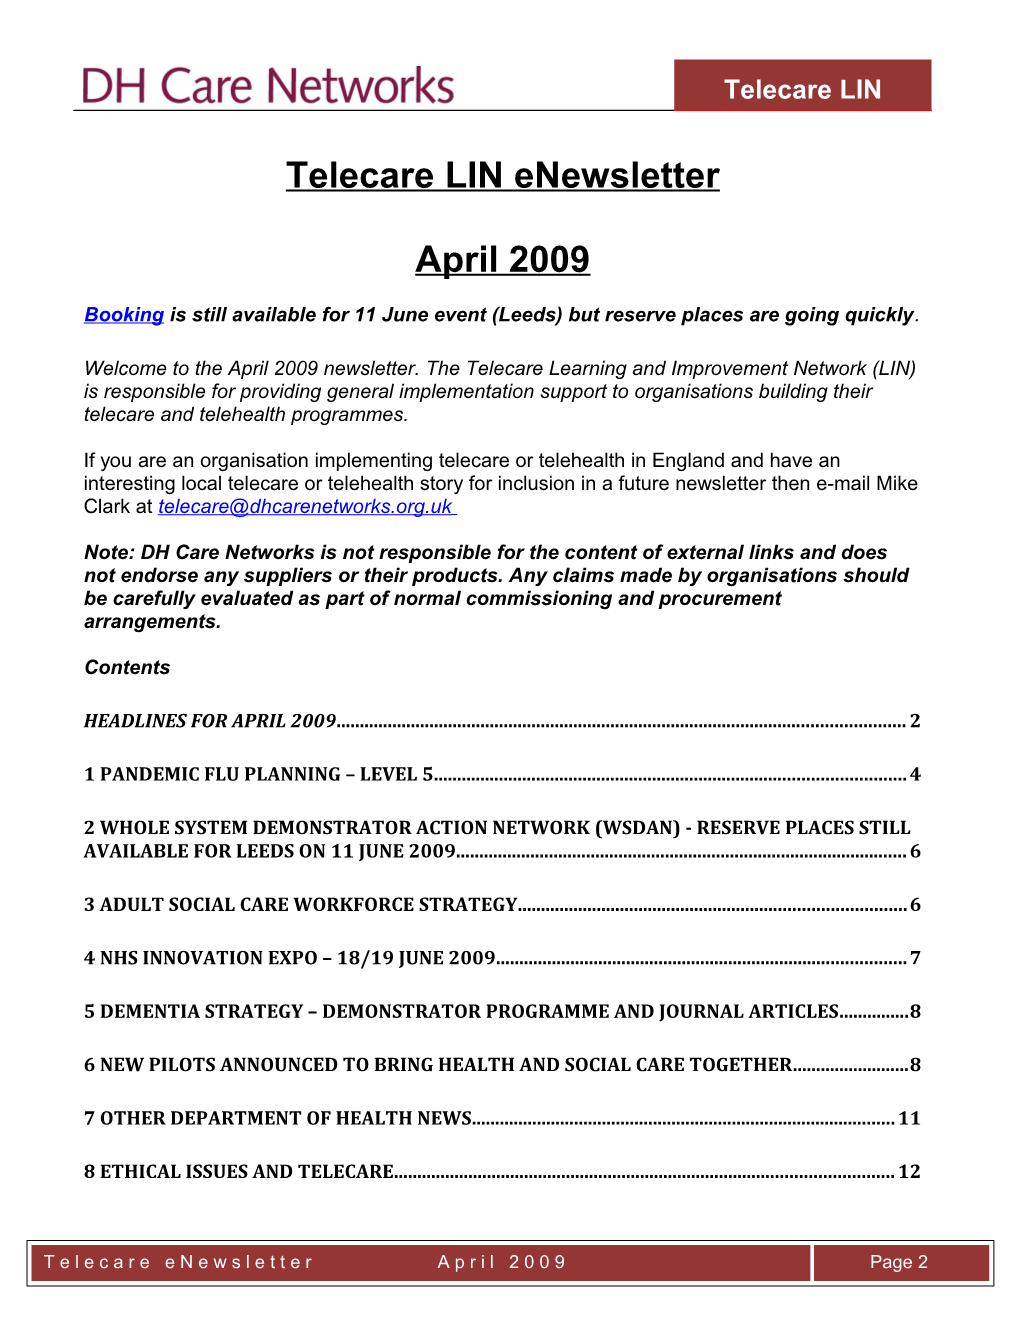 Telecare LIN Enewsletter